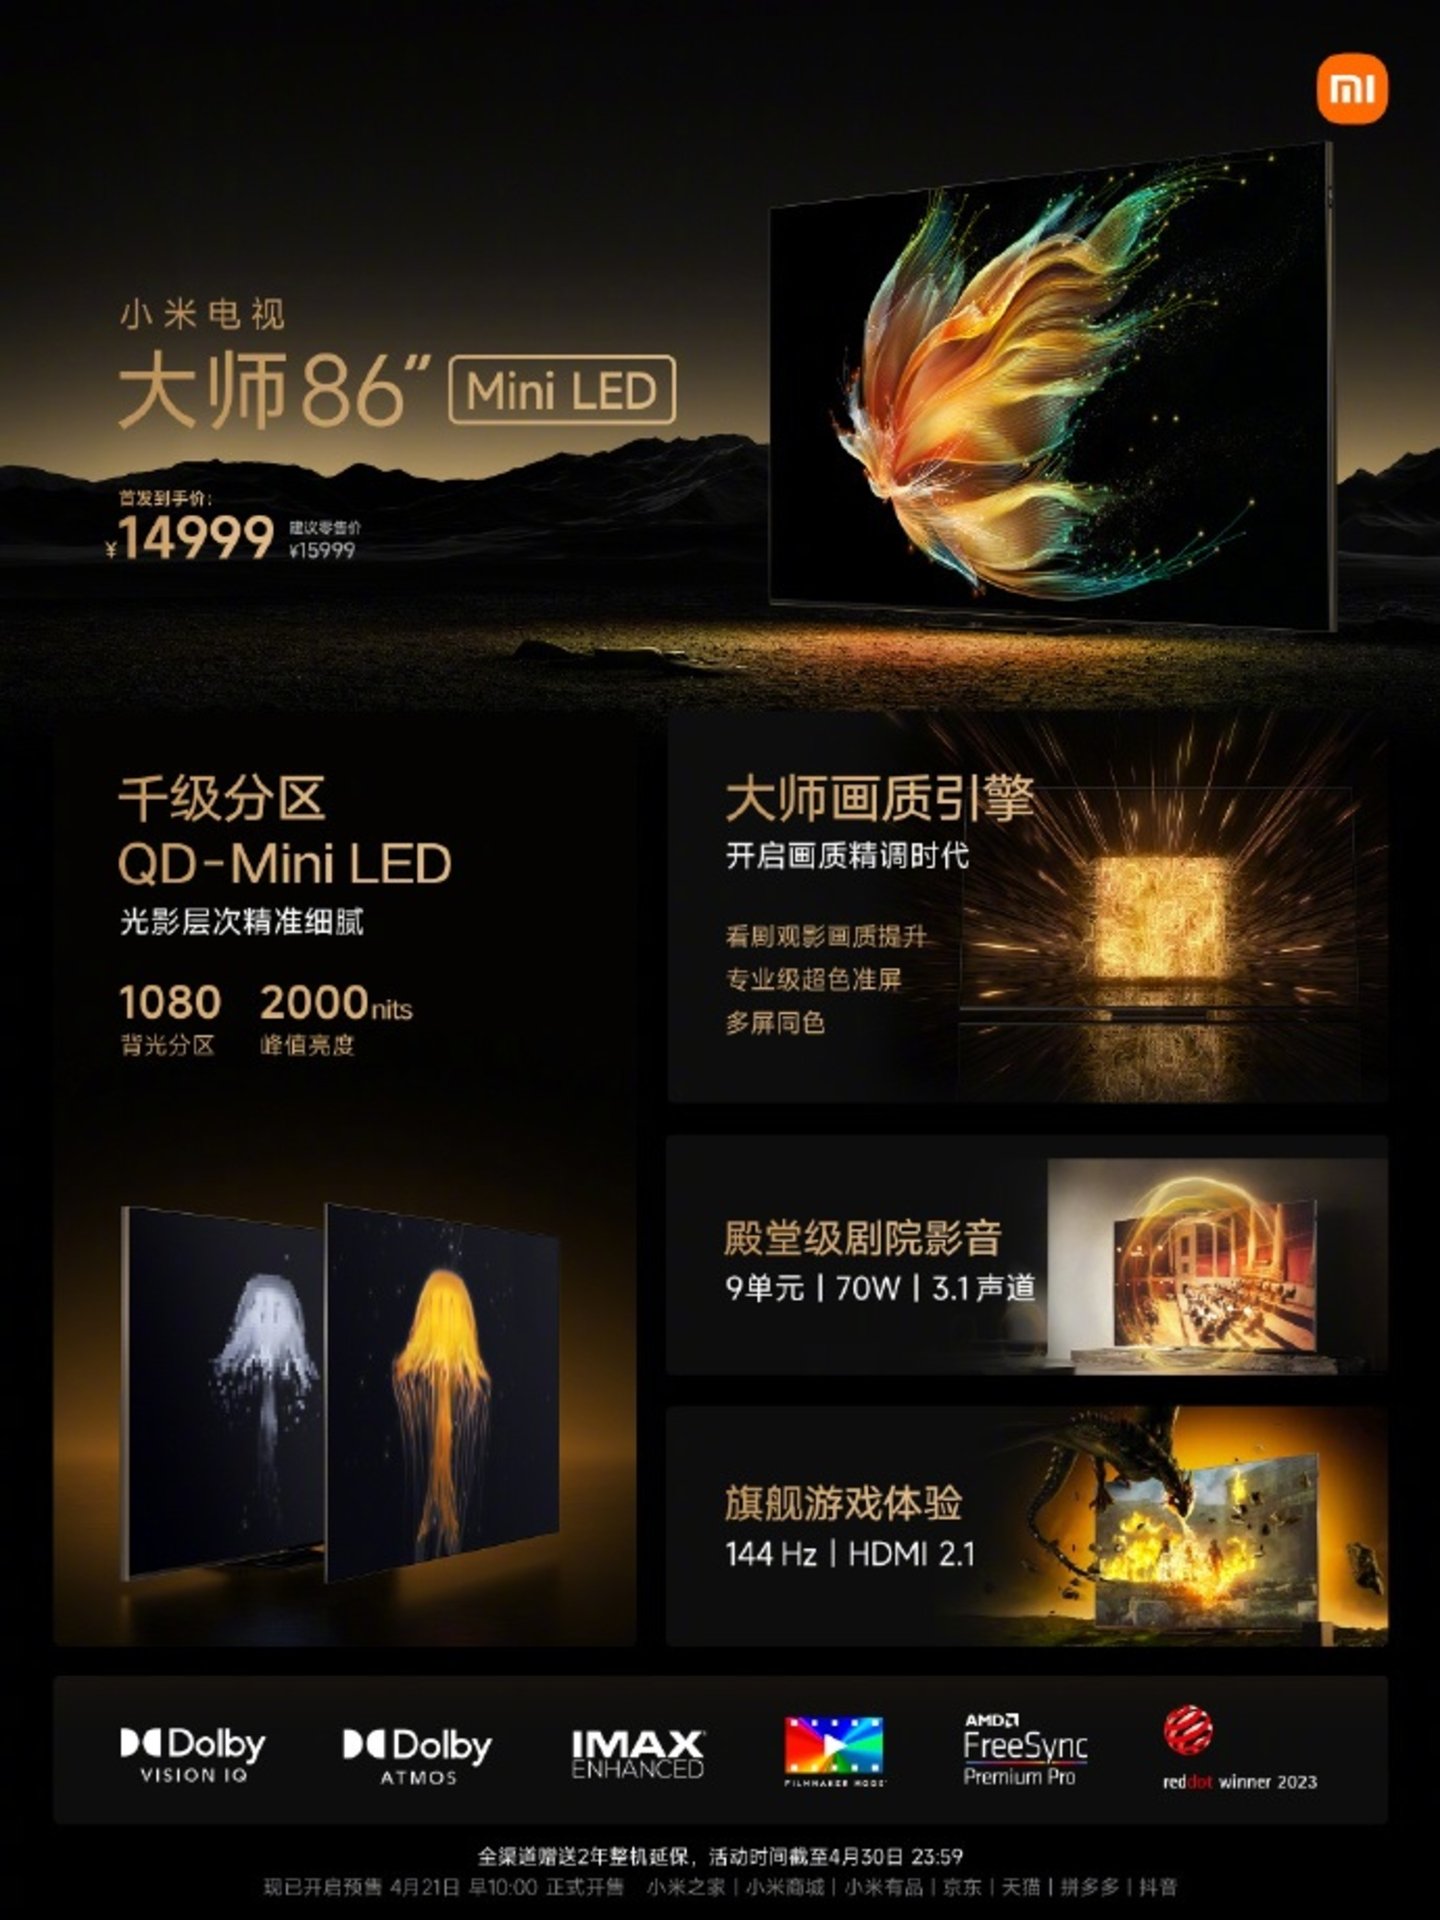 Xiaomi se salta sus reglas de oro con este lanzamiento: cuesta más de 2300 dólares